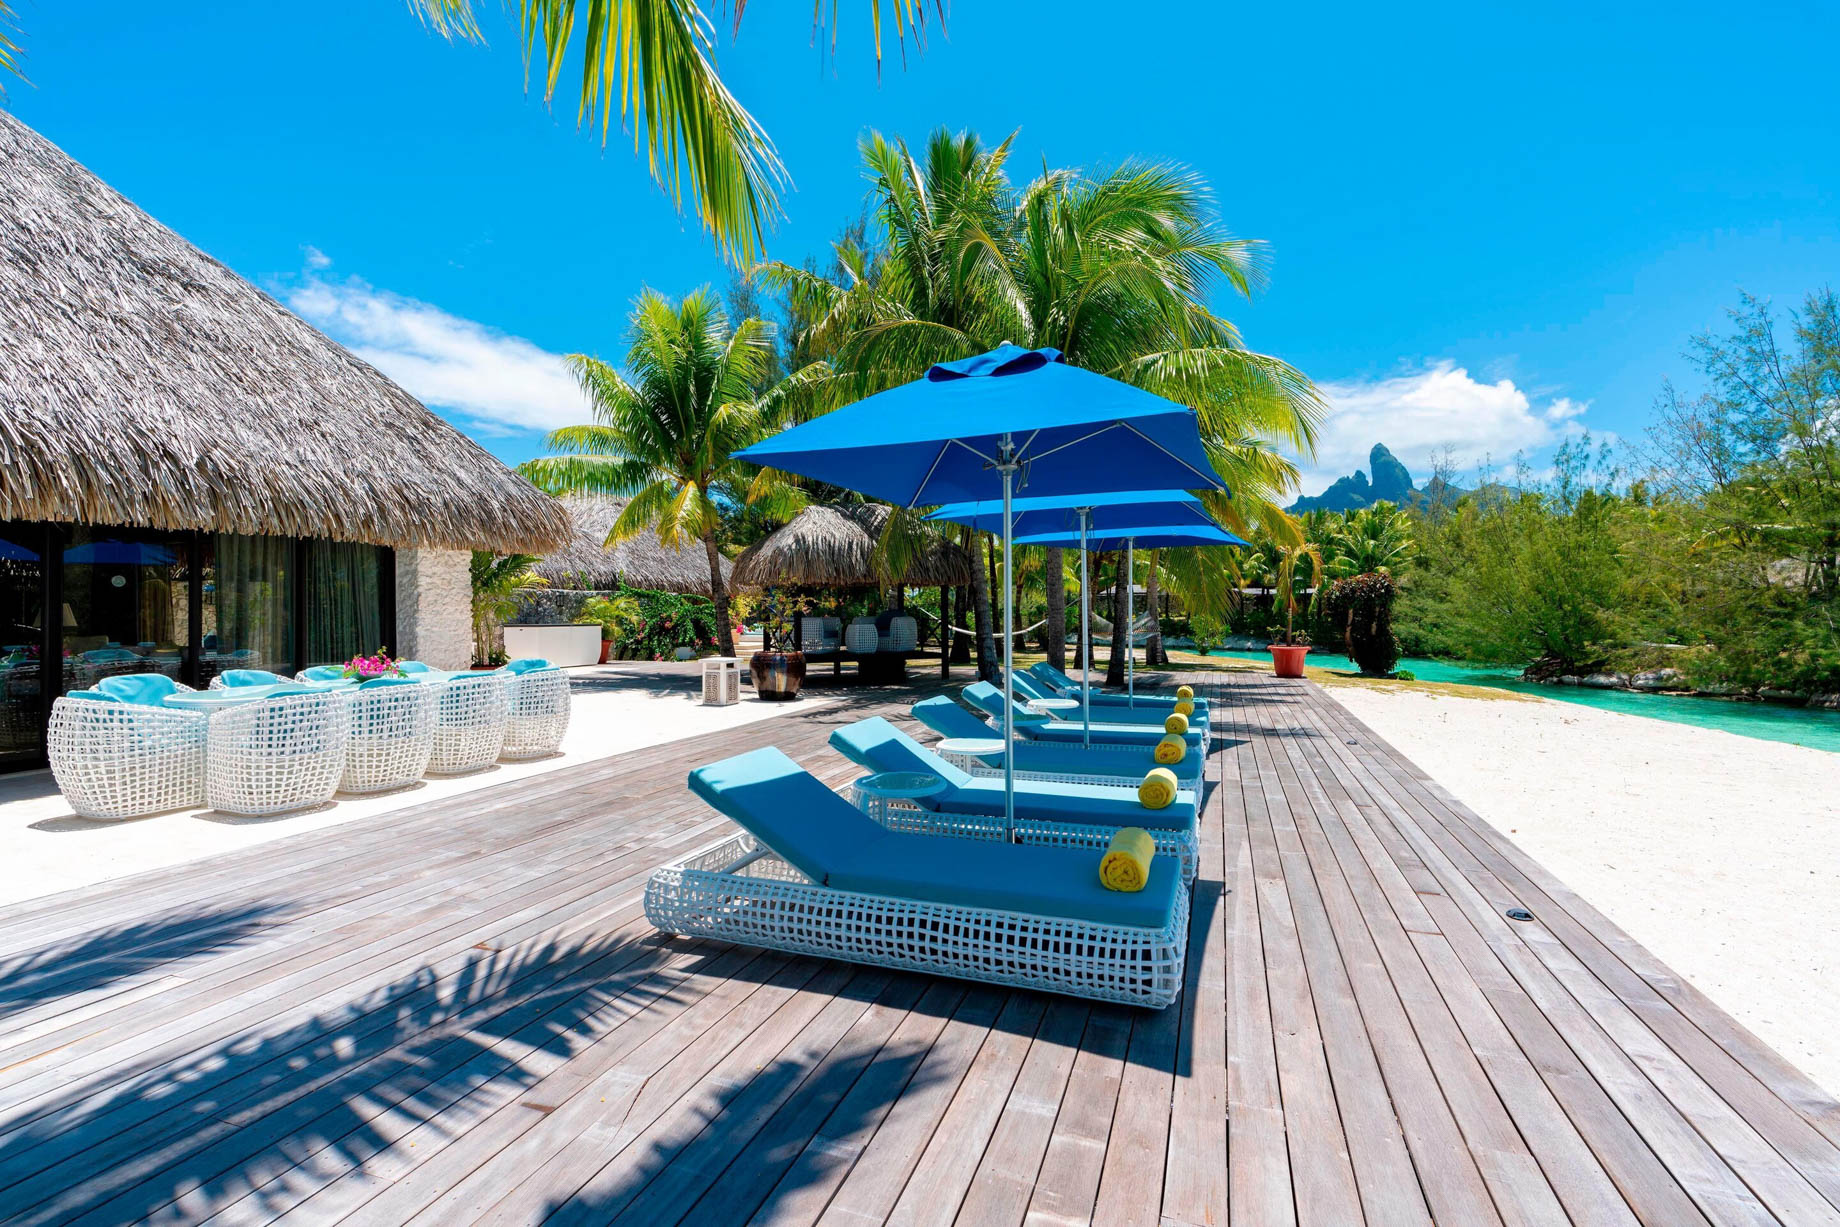 The St. Regis Bora Bora Resort - Bora Bora, French Polynesia - Royal Estate Deck